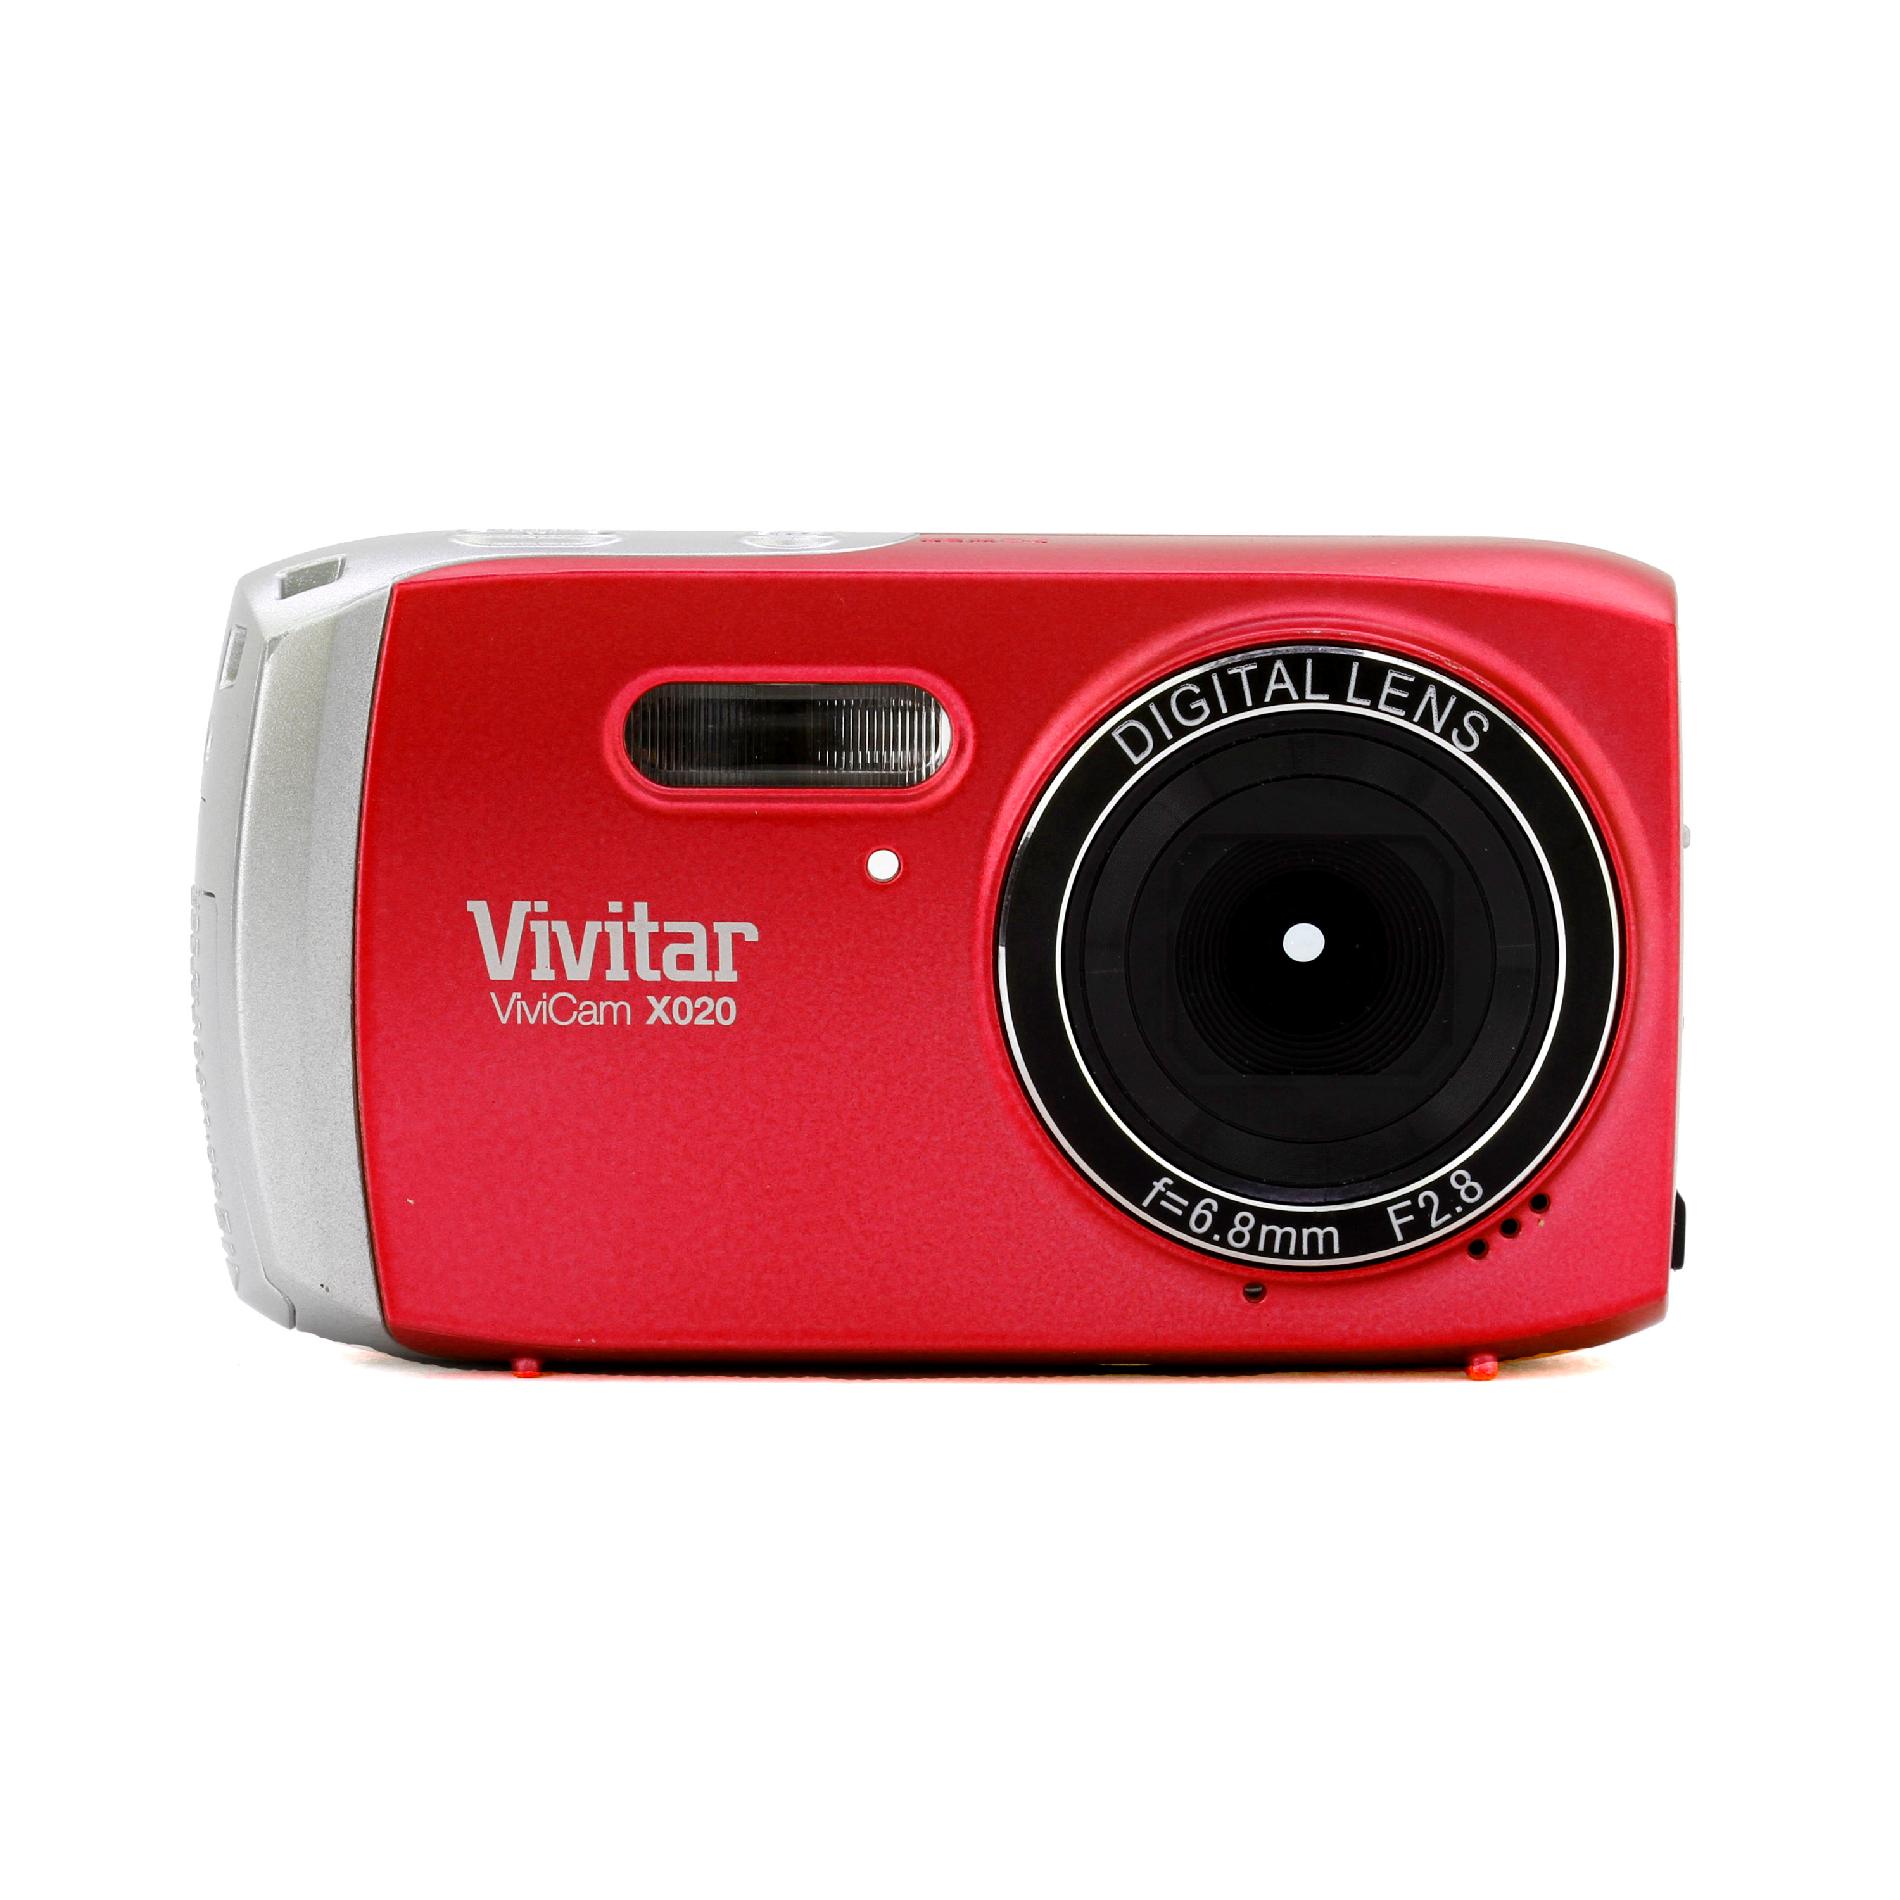 Red ViviCam VX020 Digital Camera with 10.1 Megapixels